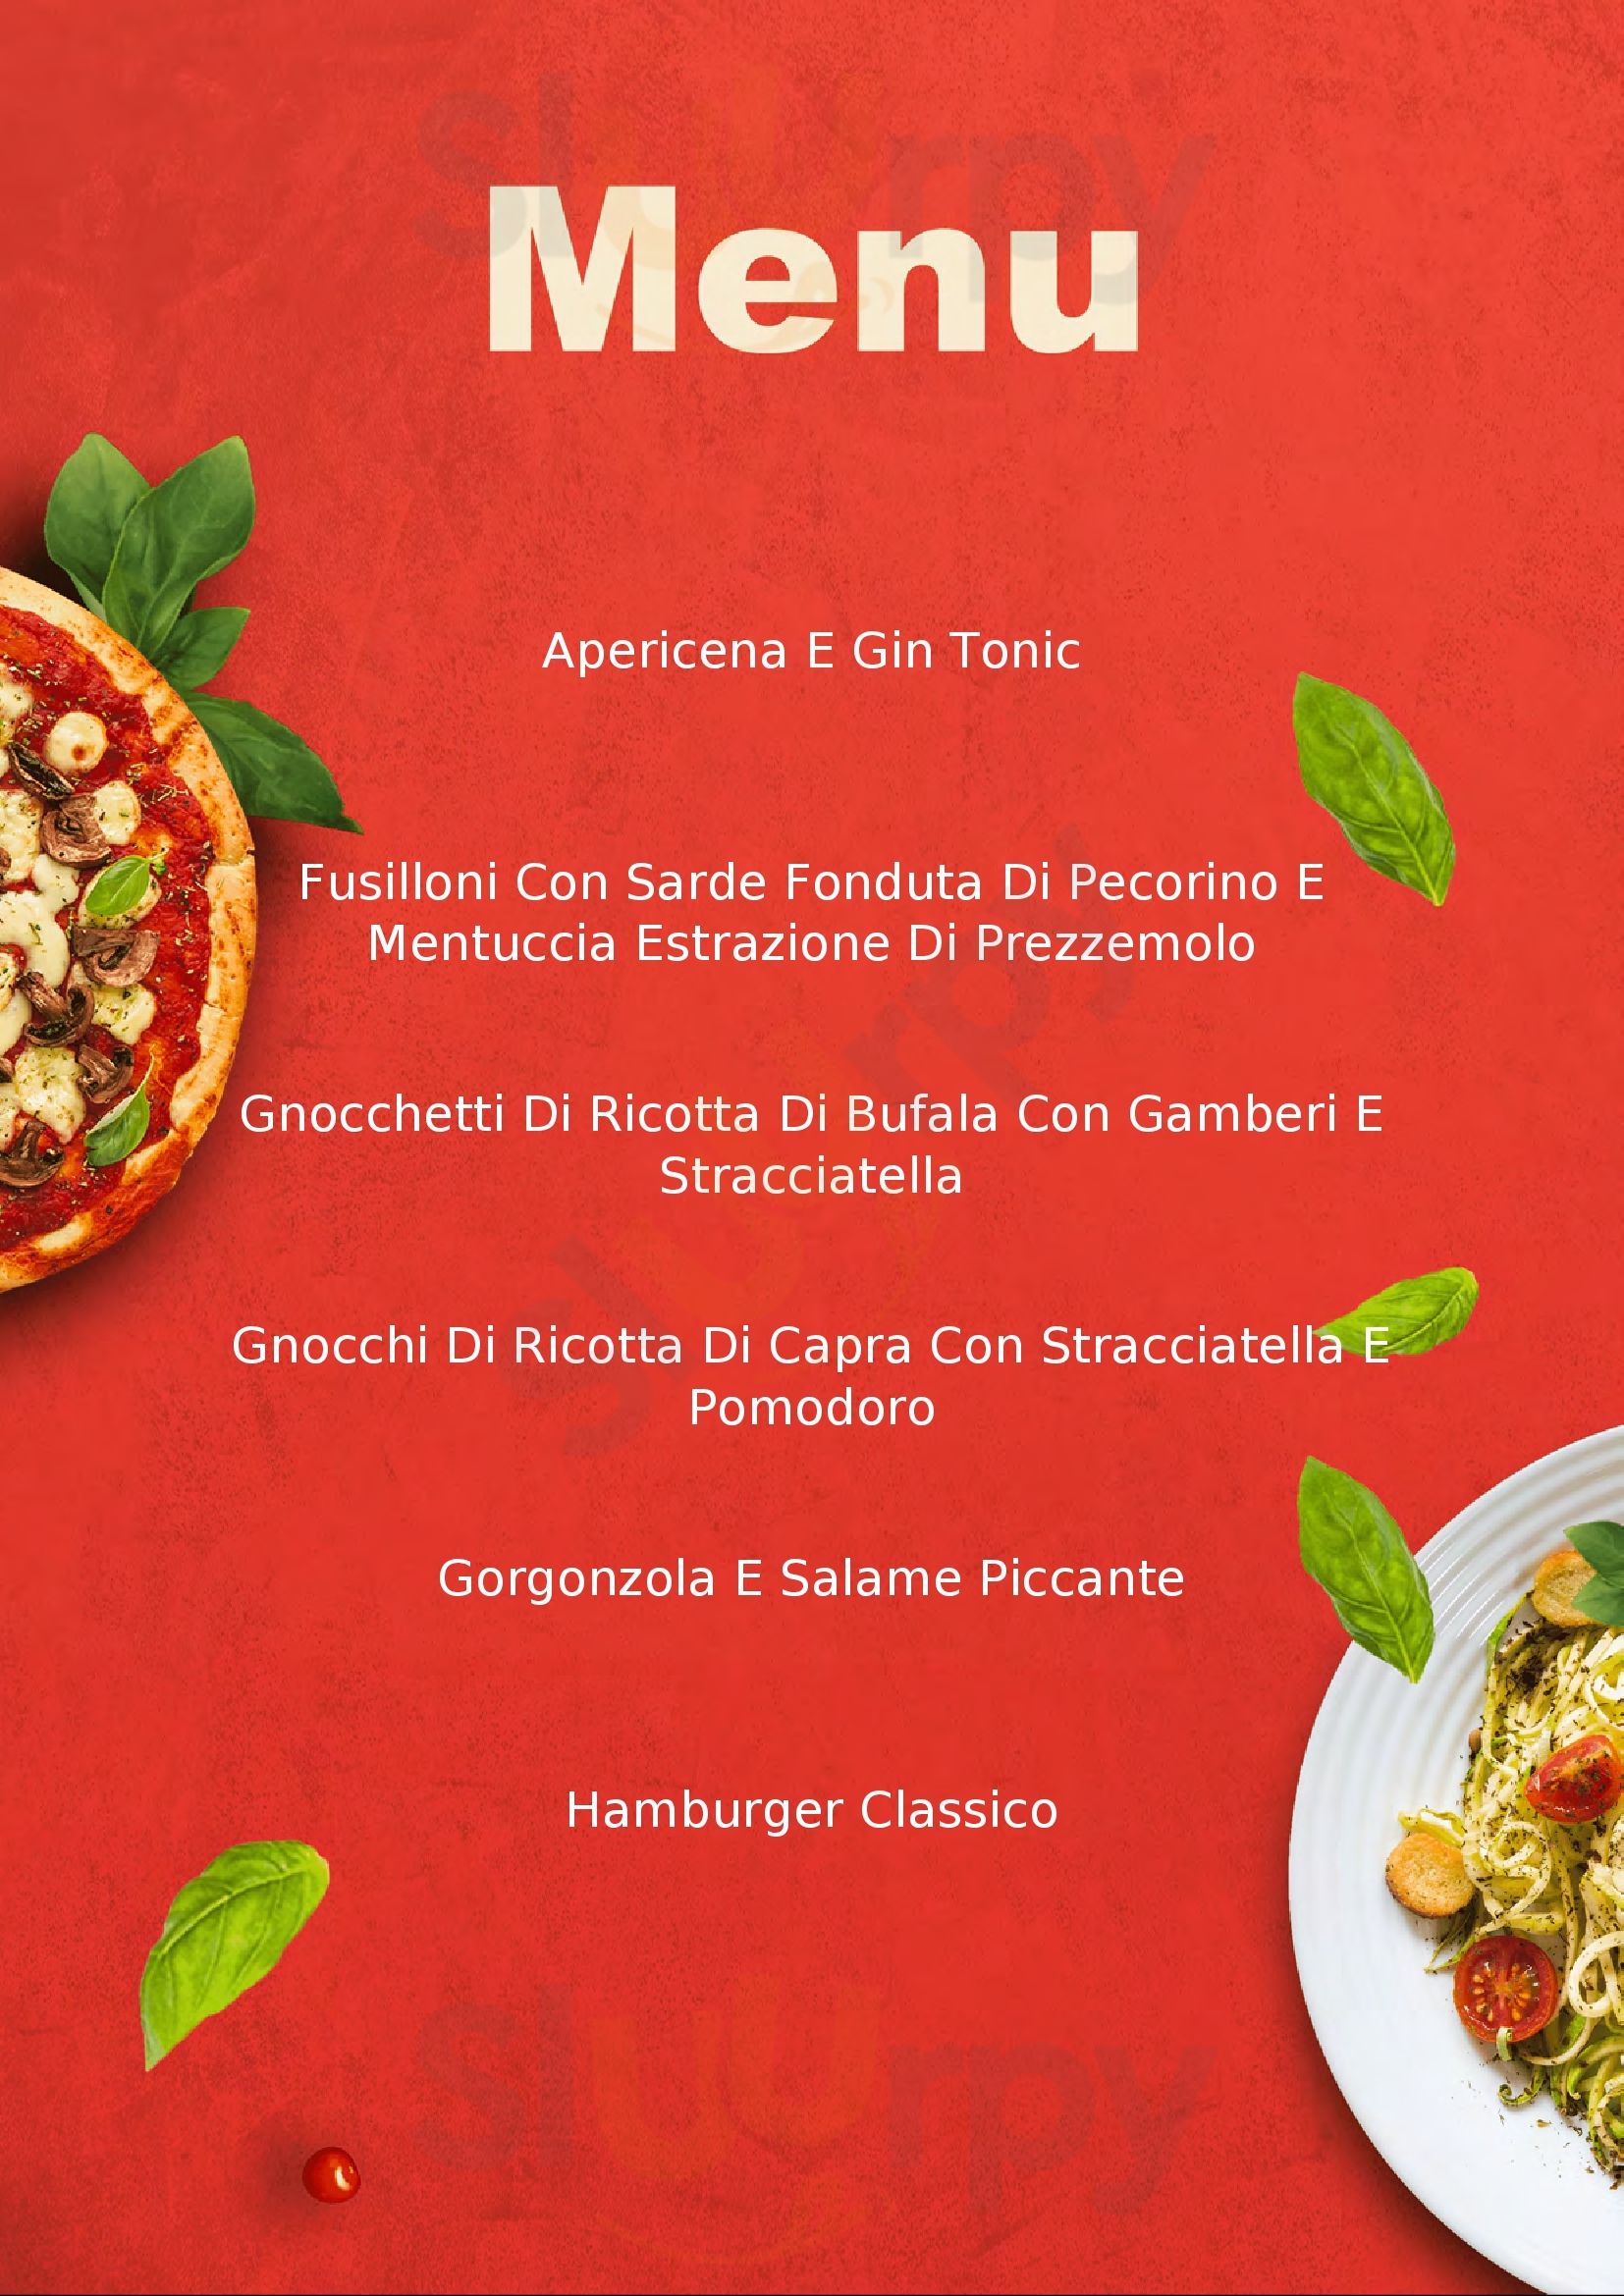 Monaco' Pizza & Lounge Galliate menù 1 pagina